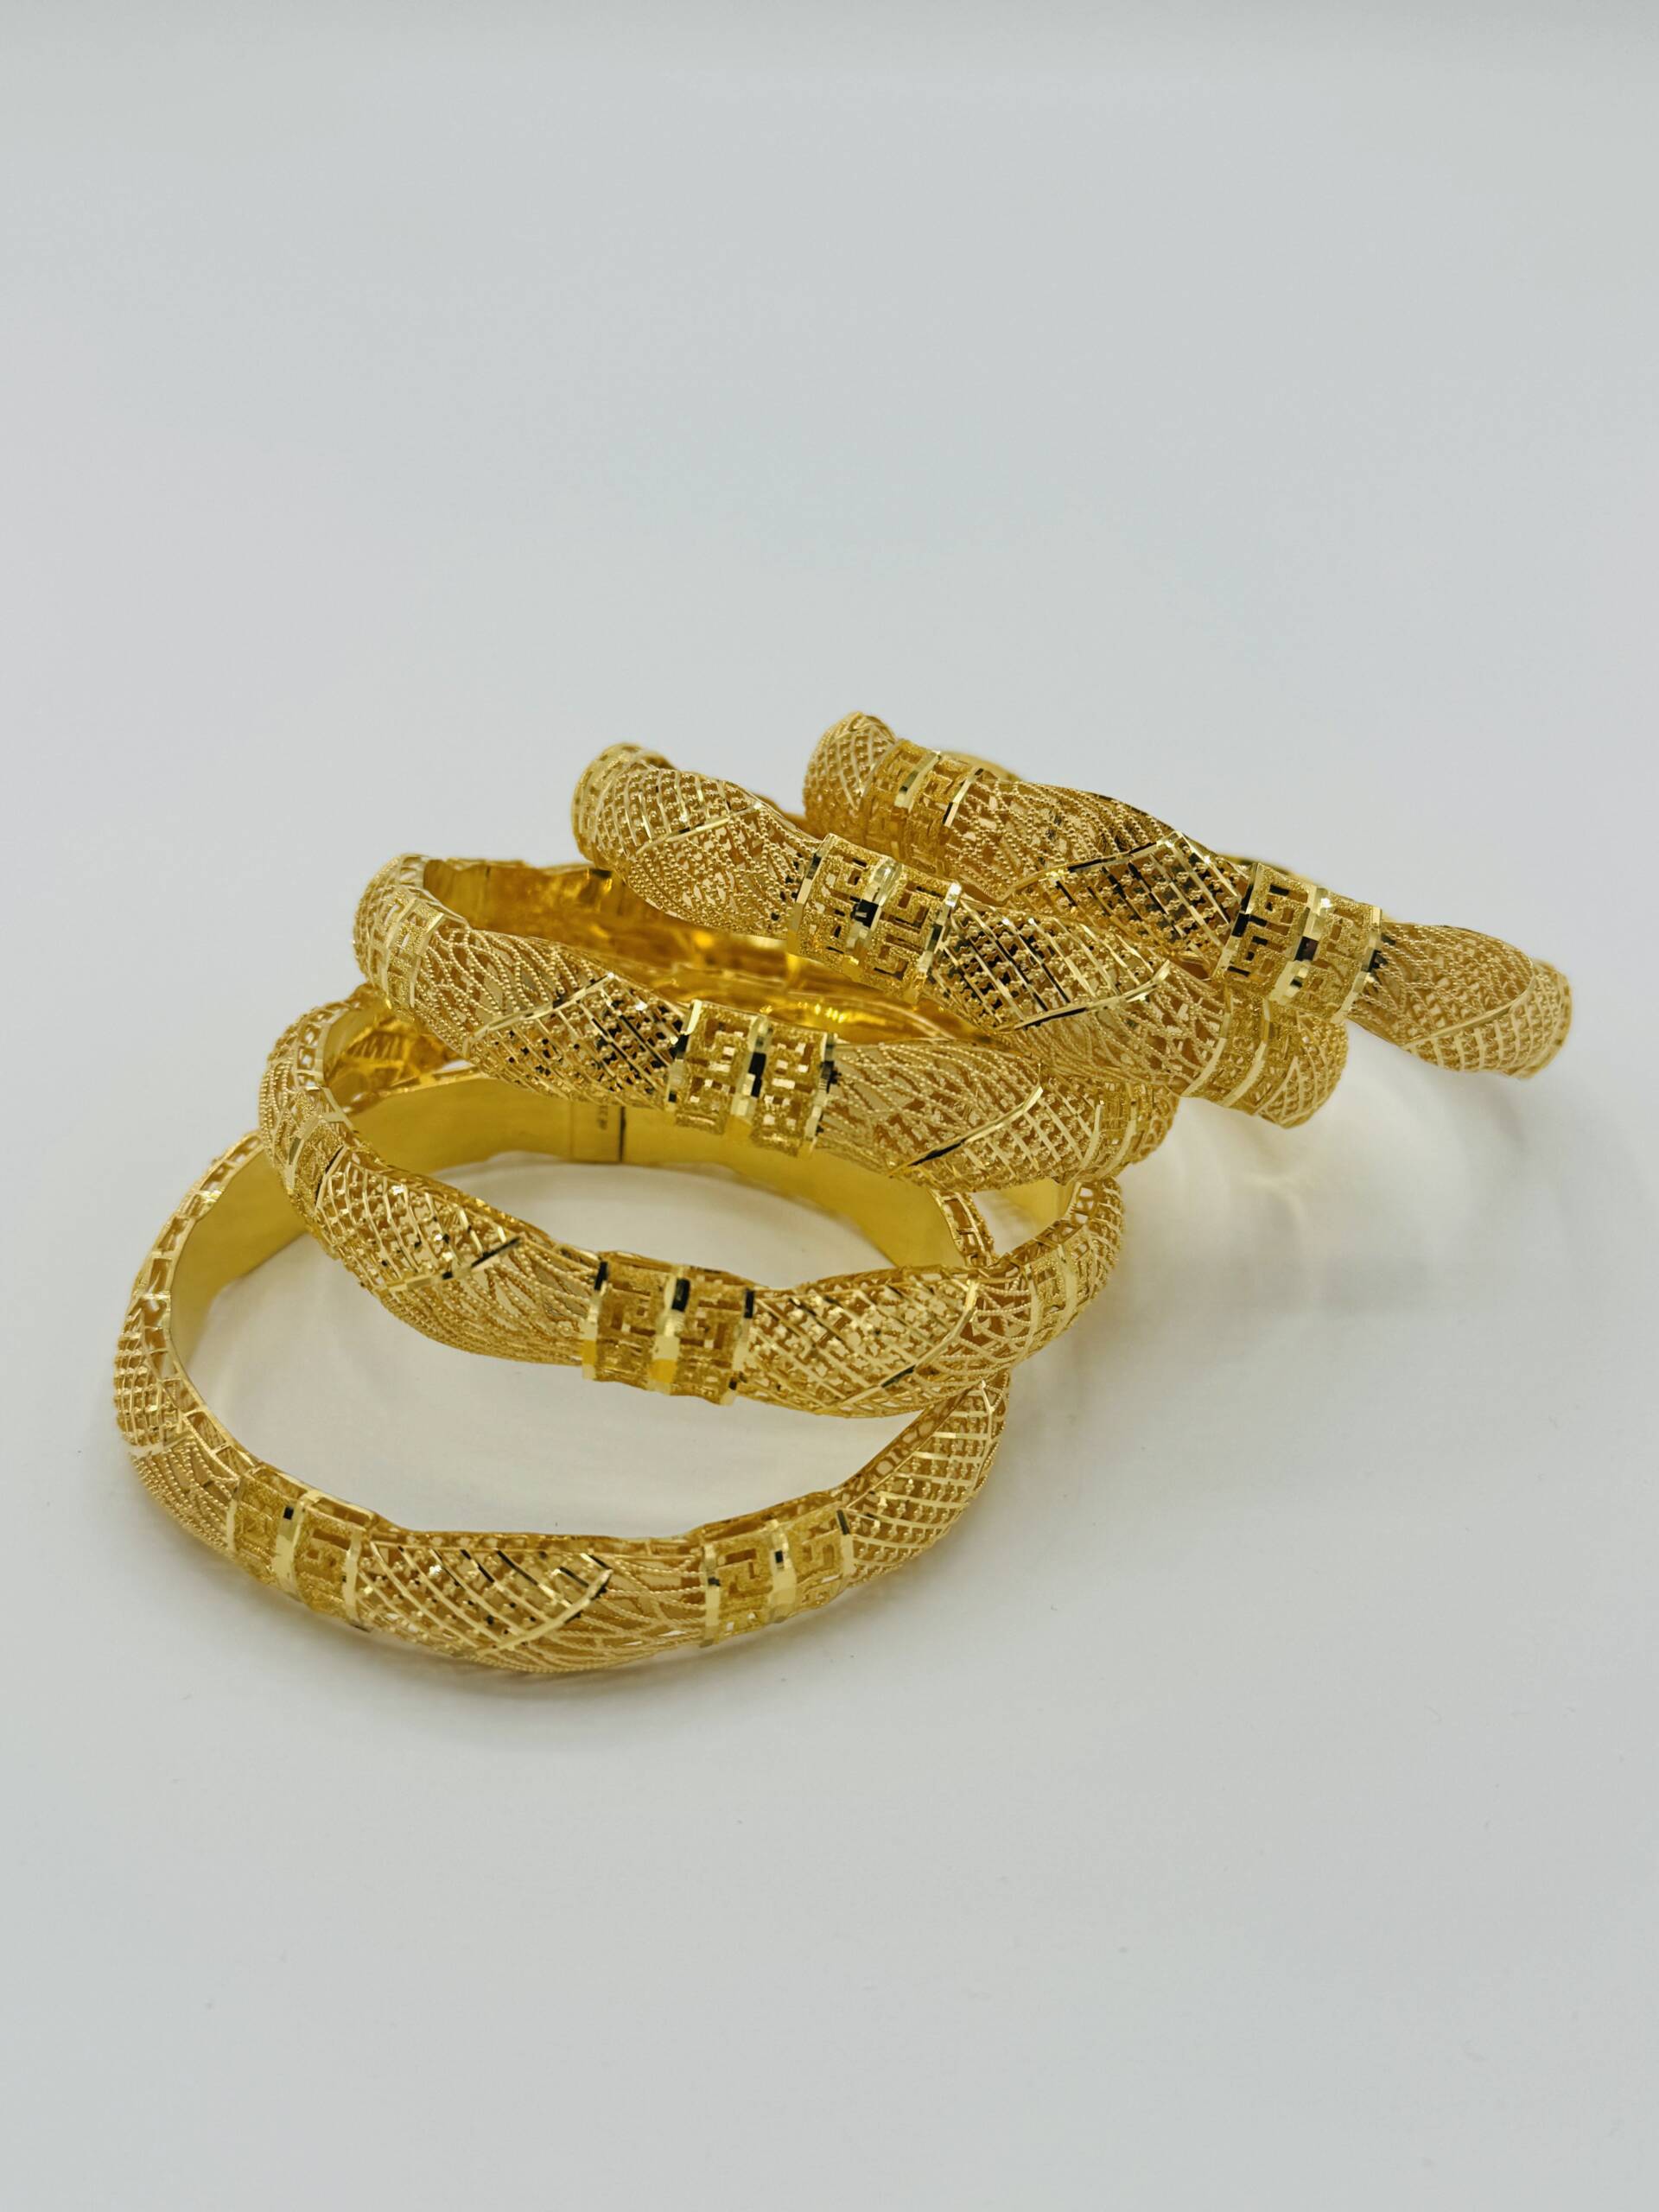 Bangle - Kishek Jewelers